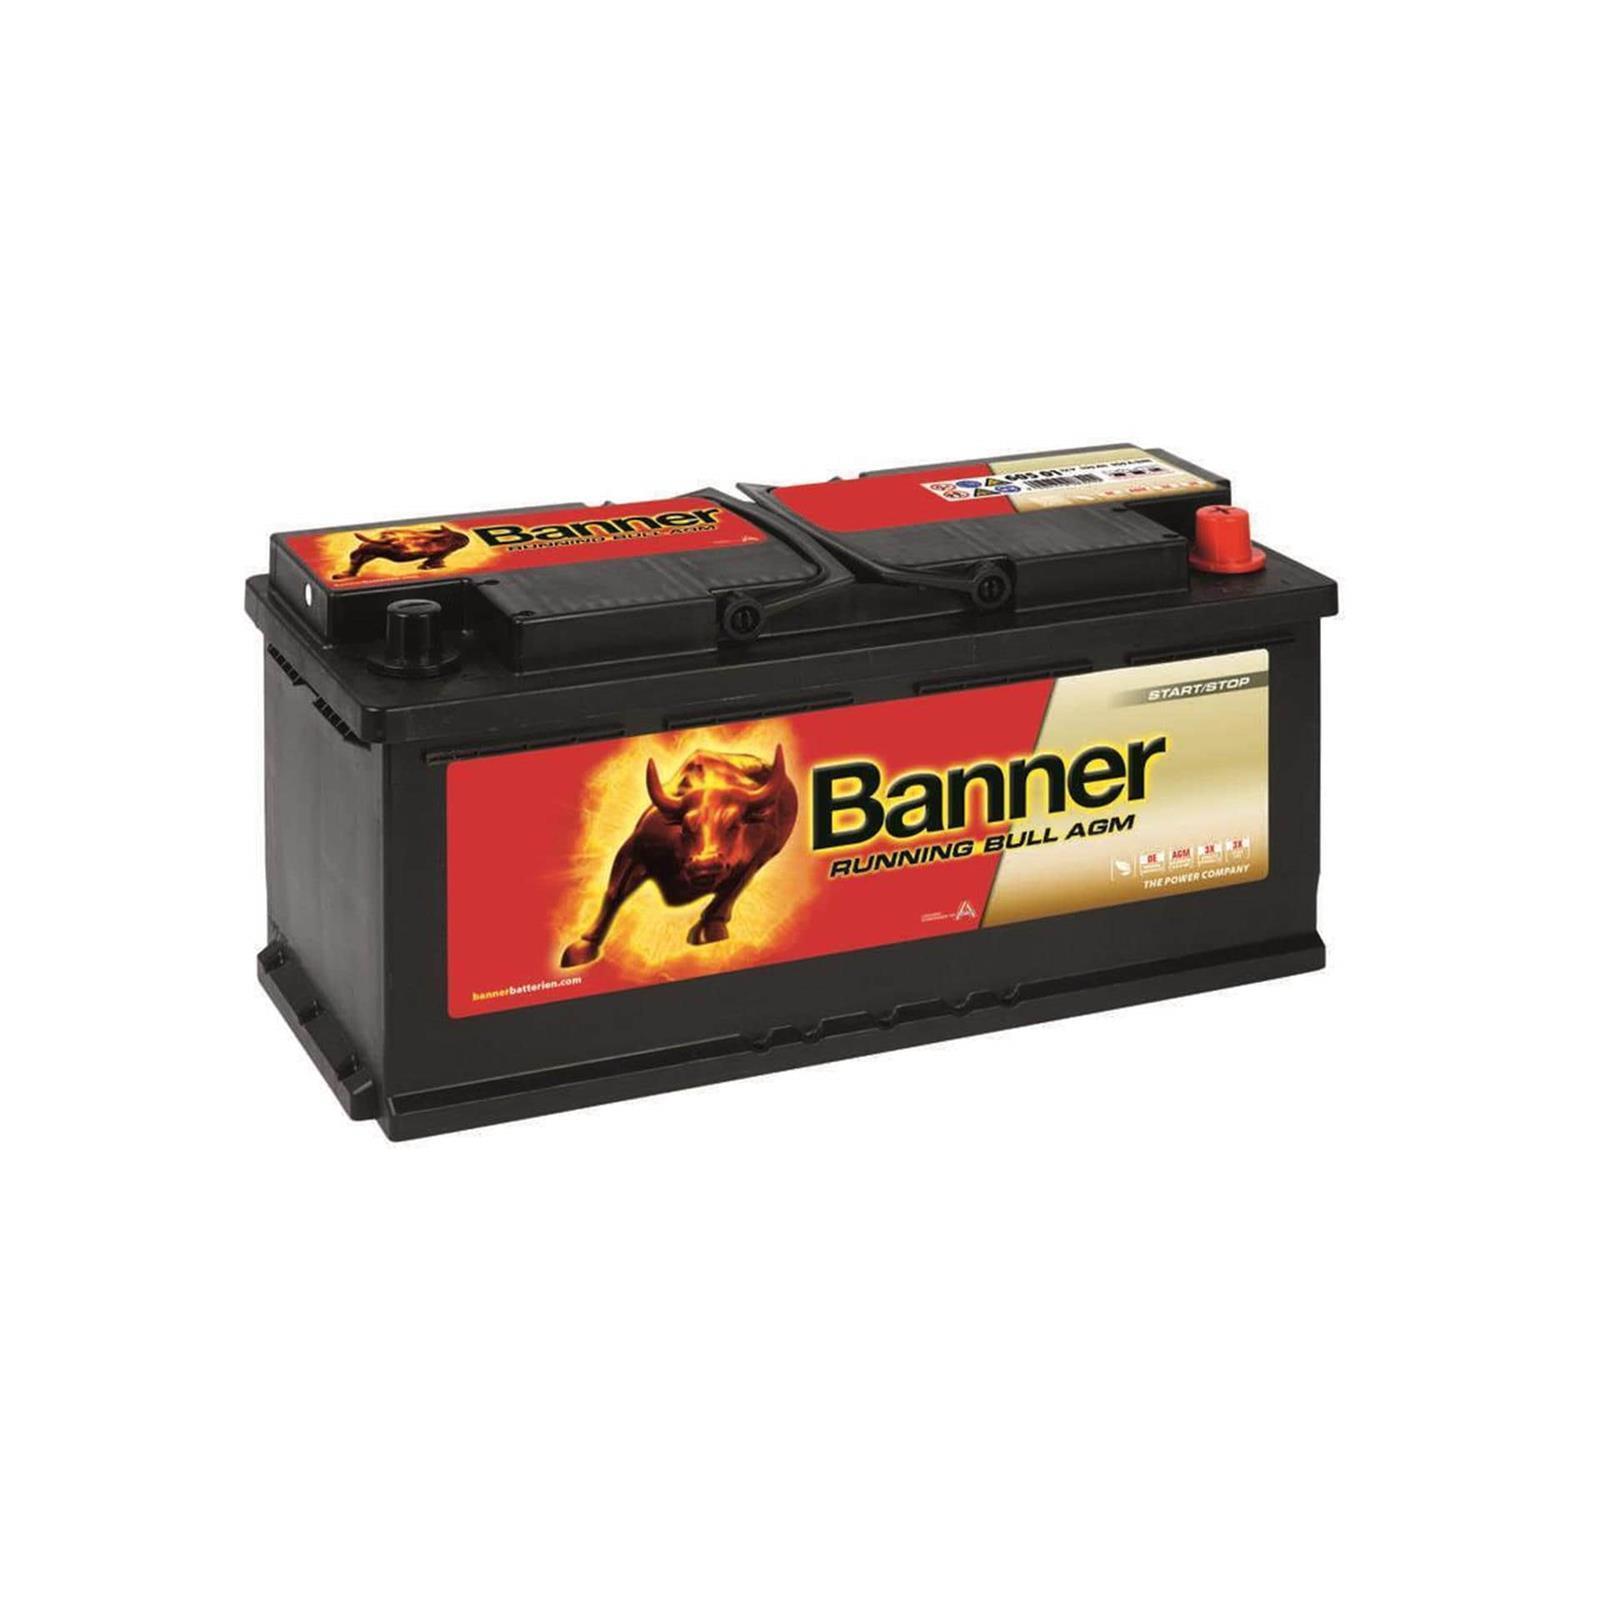 Banner Running Bull 60501 AGM Autobatterie 12V 105Ah